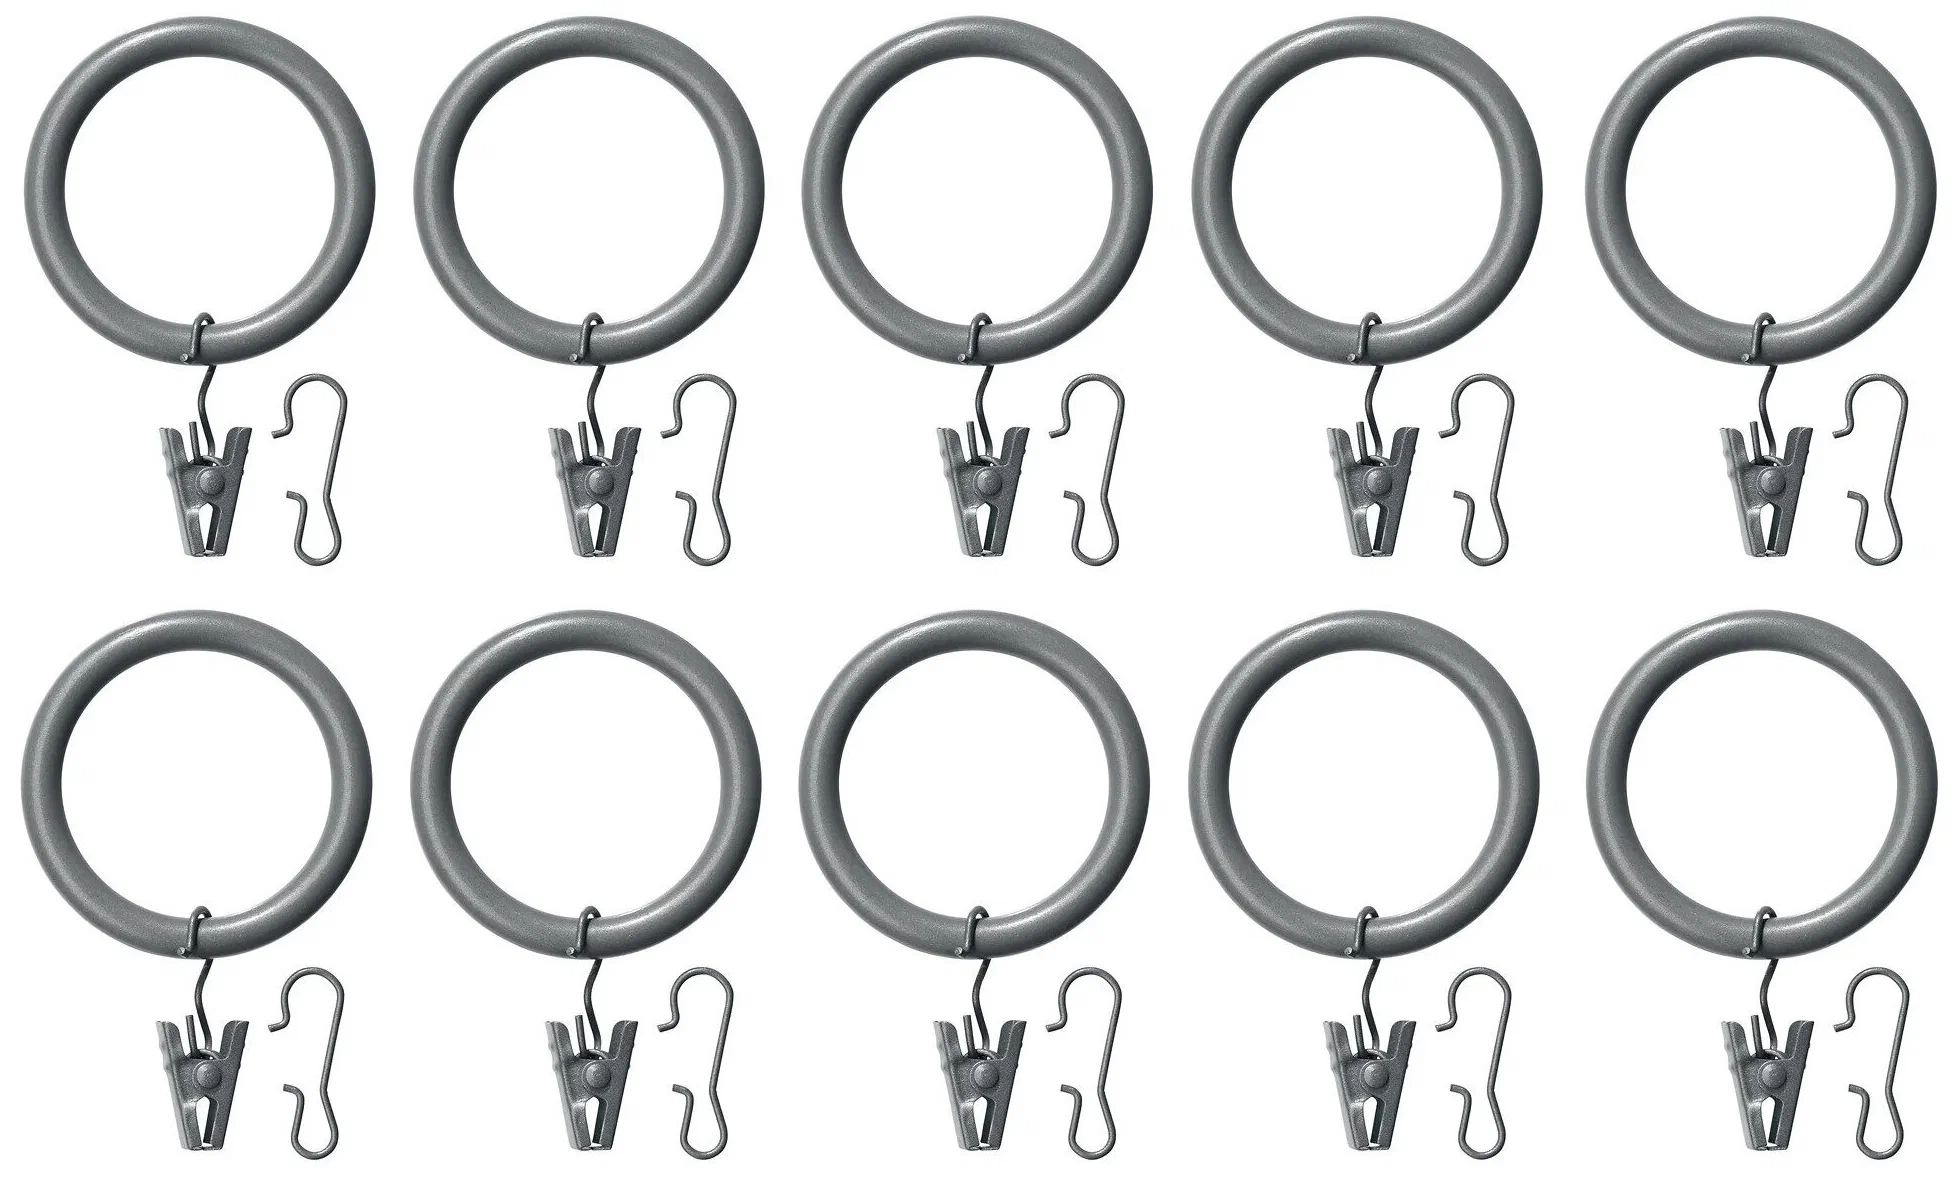 Гардин кольцо с зажимом и крючком IKEA SYRLIG, 38 мм, серый. 10 шт. Икеа Сирлиг.